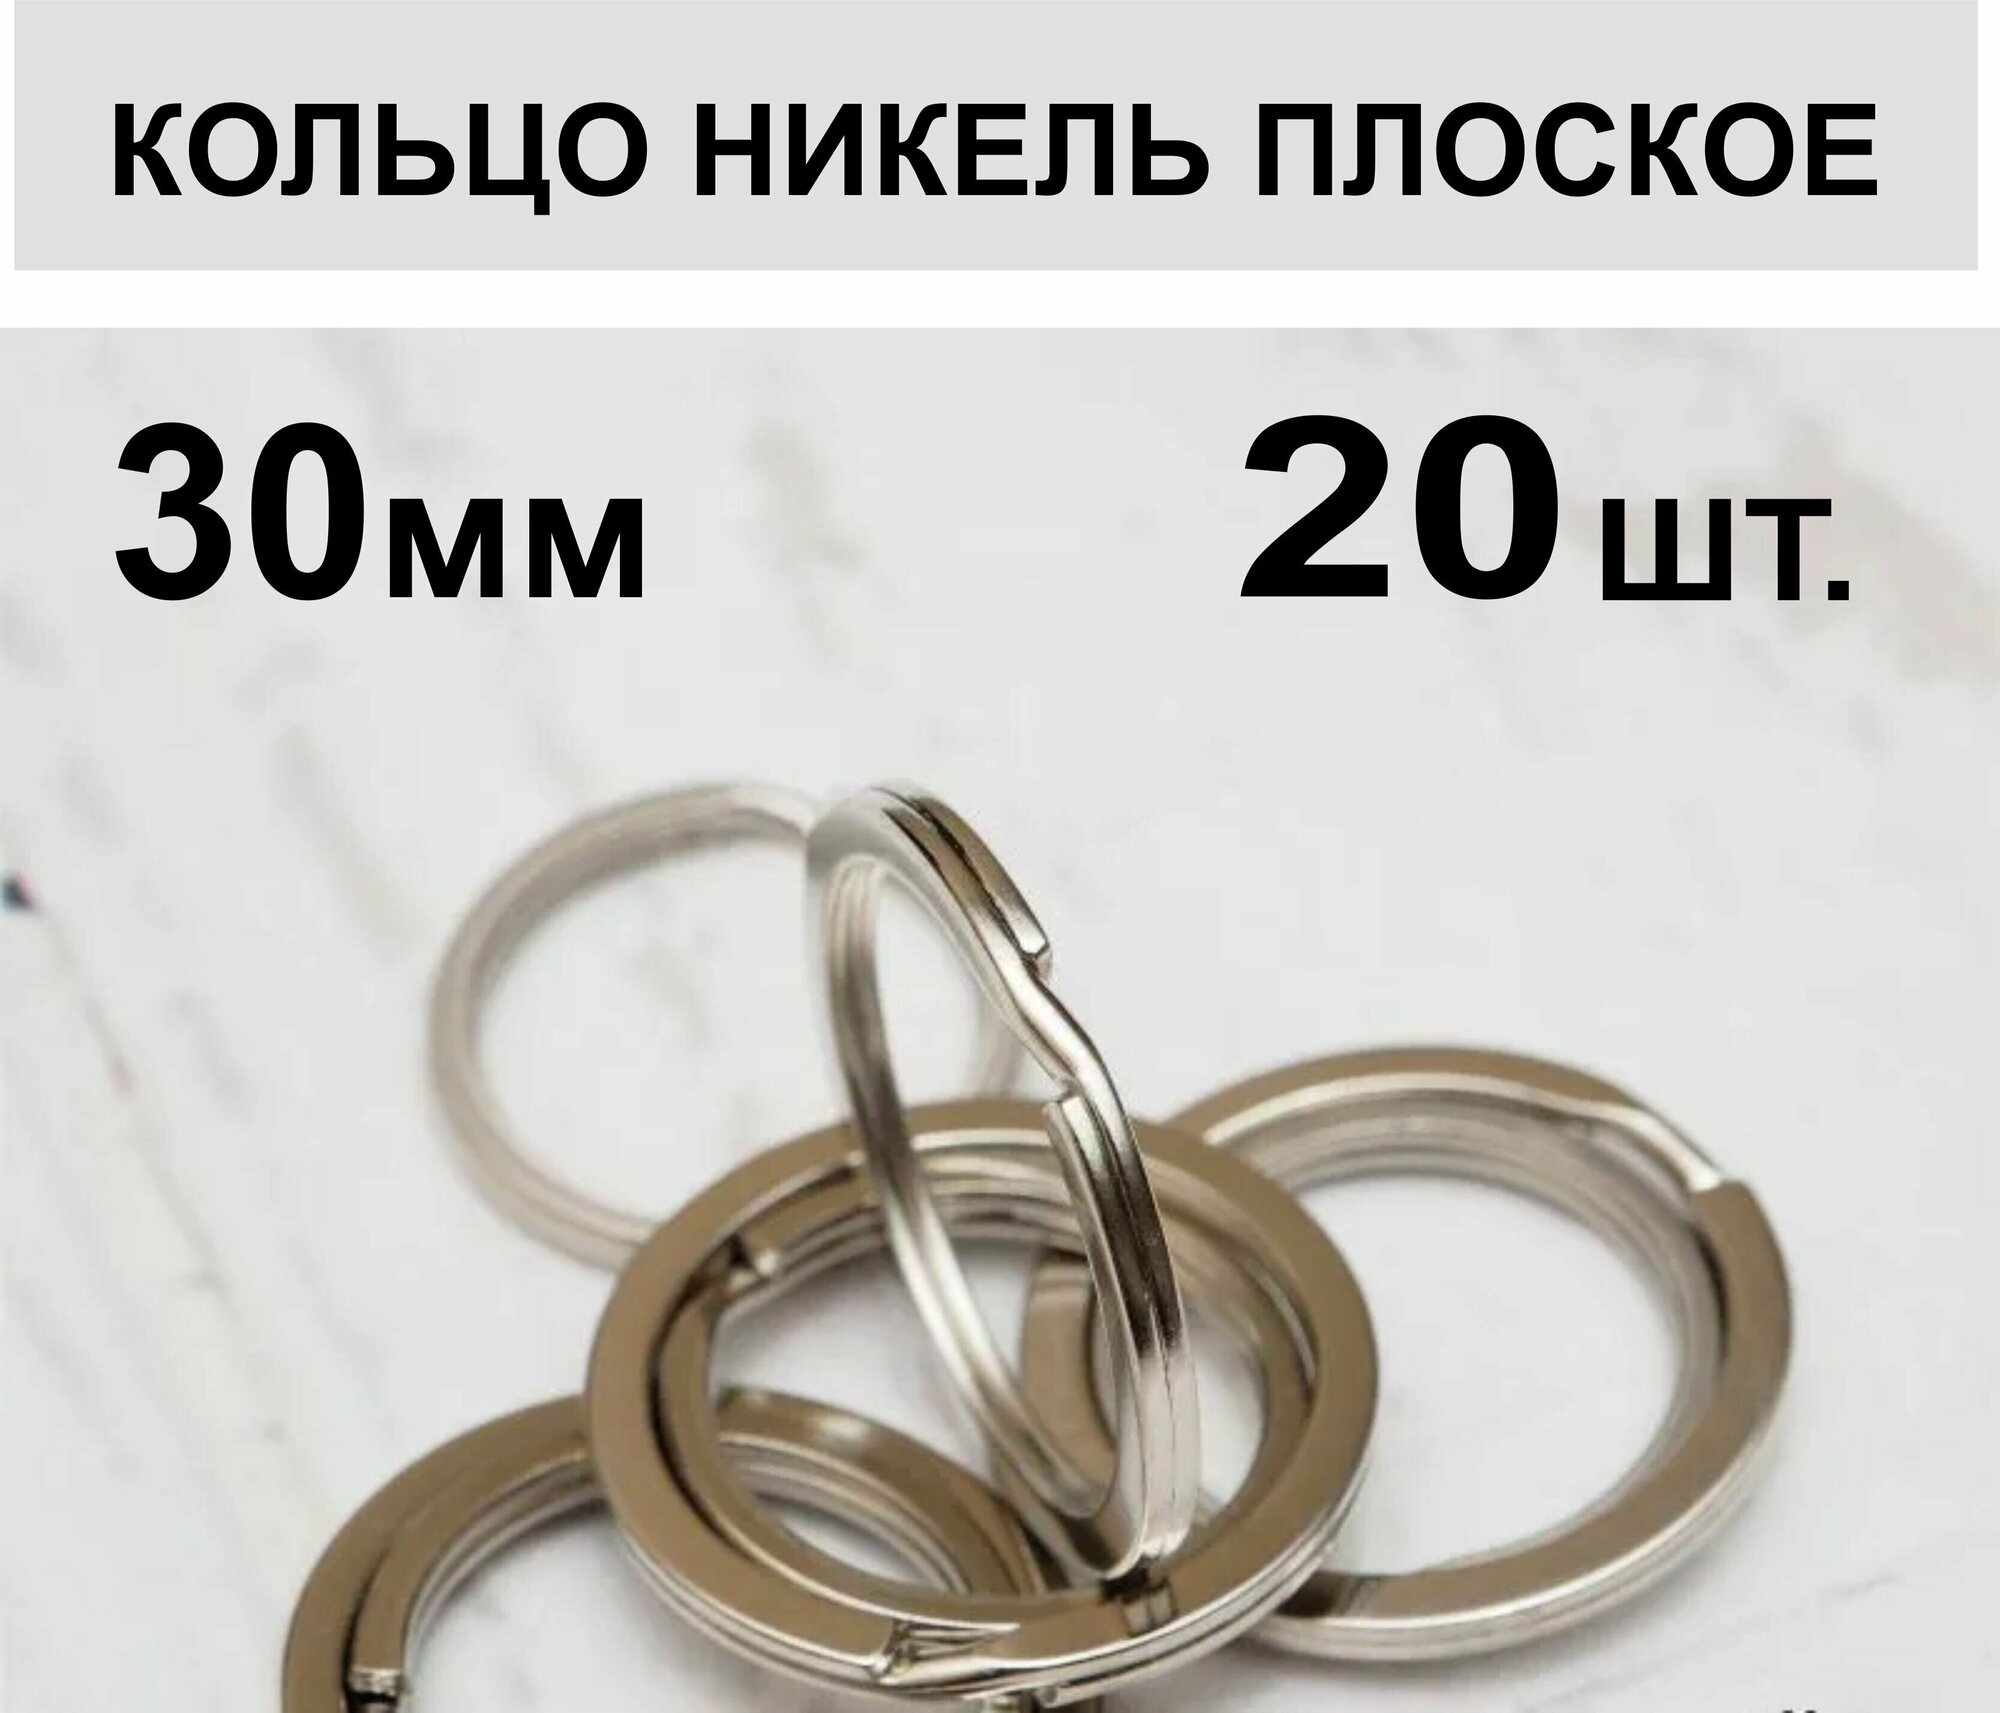 Кольцо для ключей плоское 30 мм 20 шт.